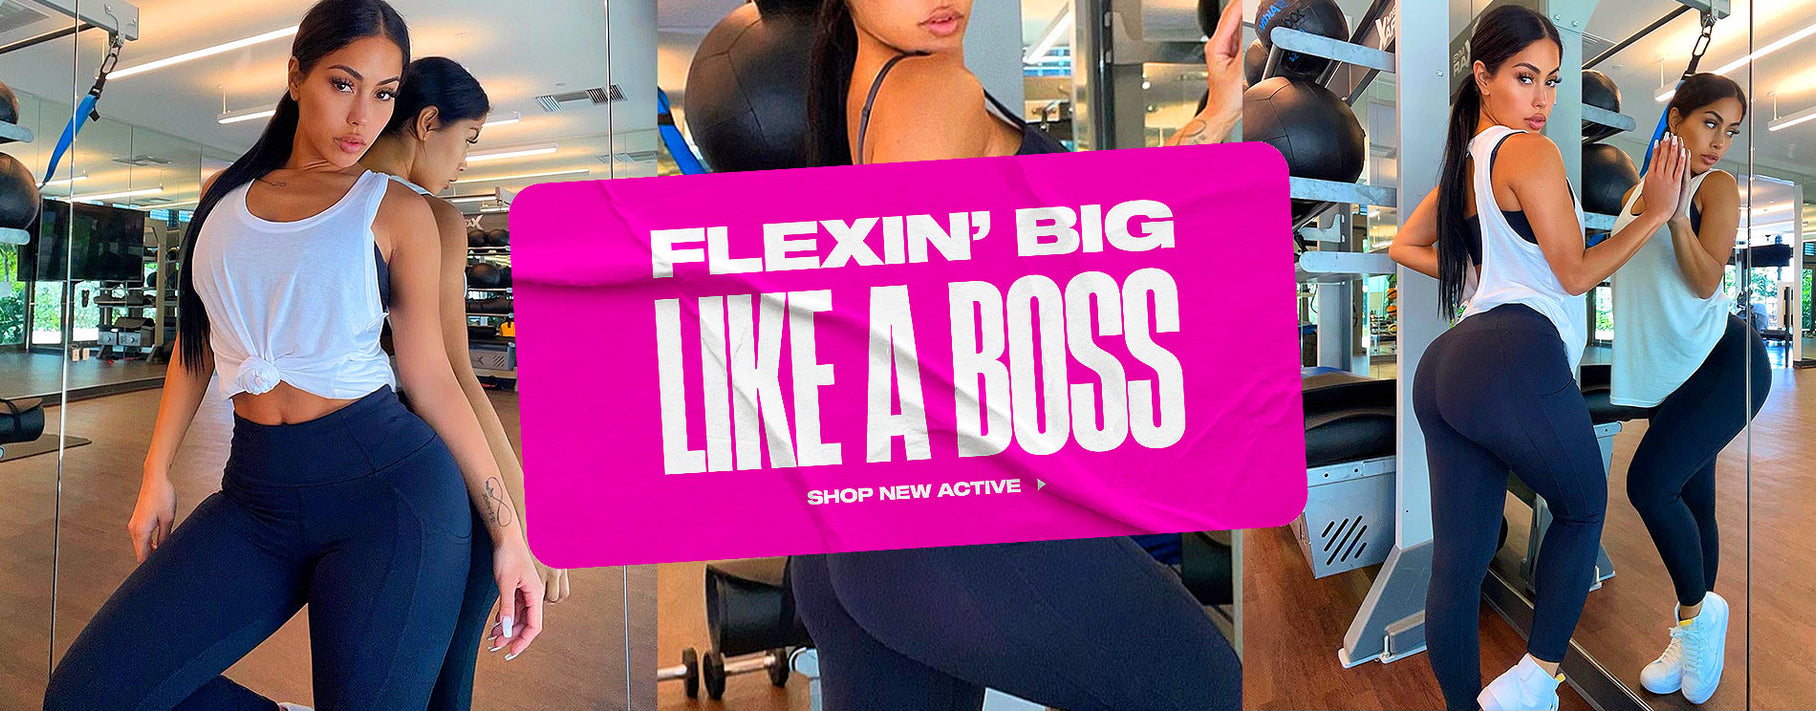 Flexin' Big Like A Boss: Shop New Active